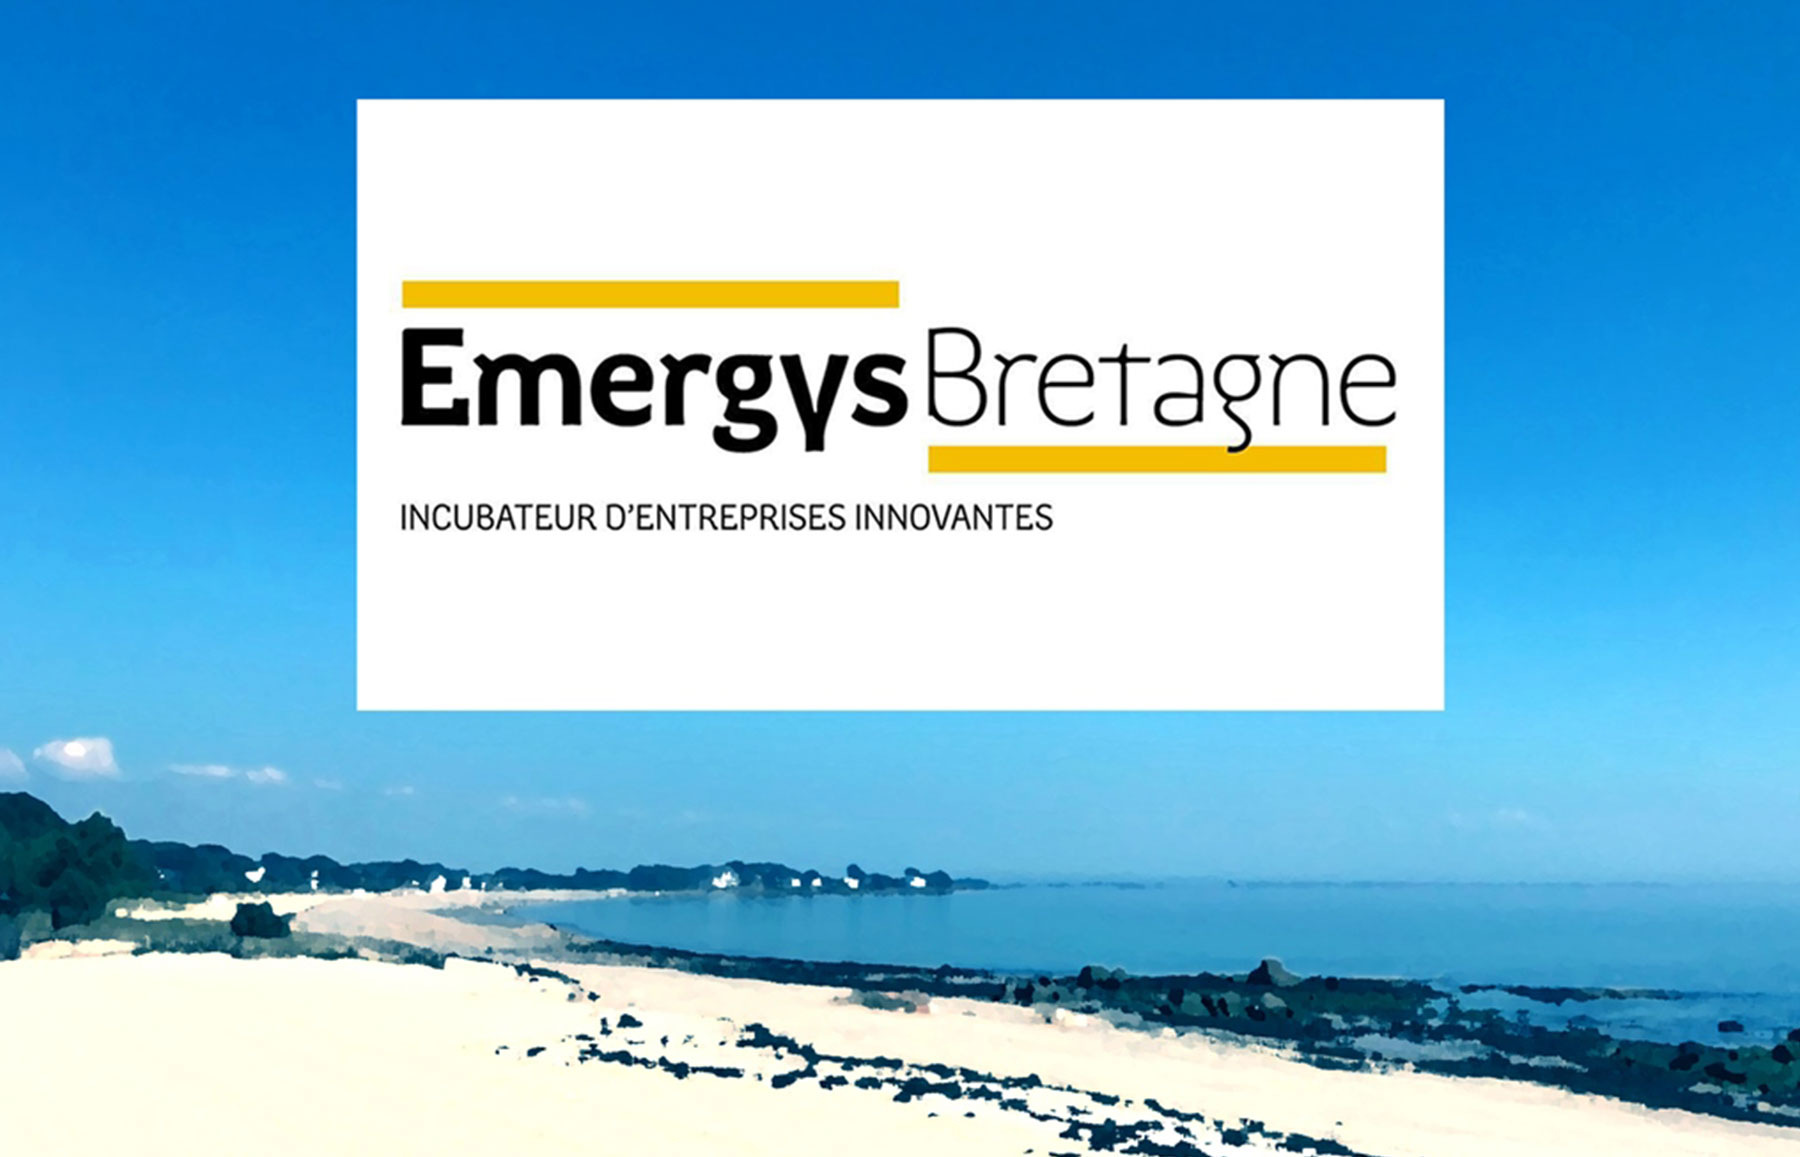 Héole intégré par Emergys Bretagne, incubateur d’entreprises Innovantes !